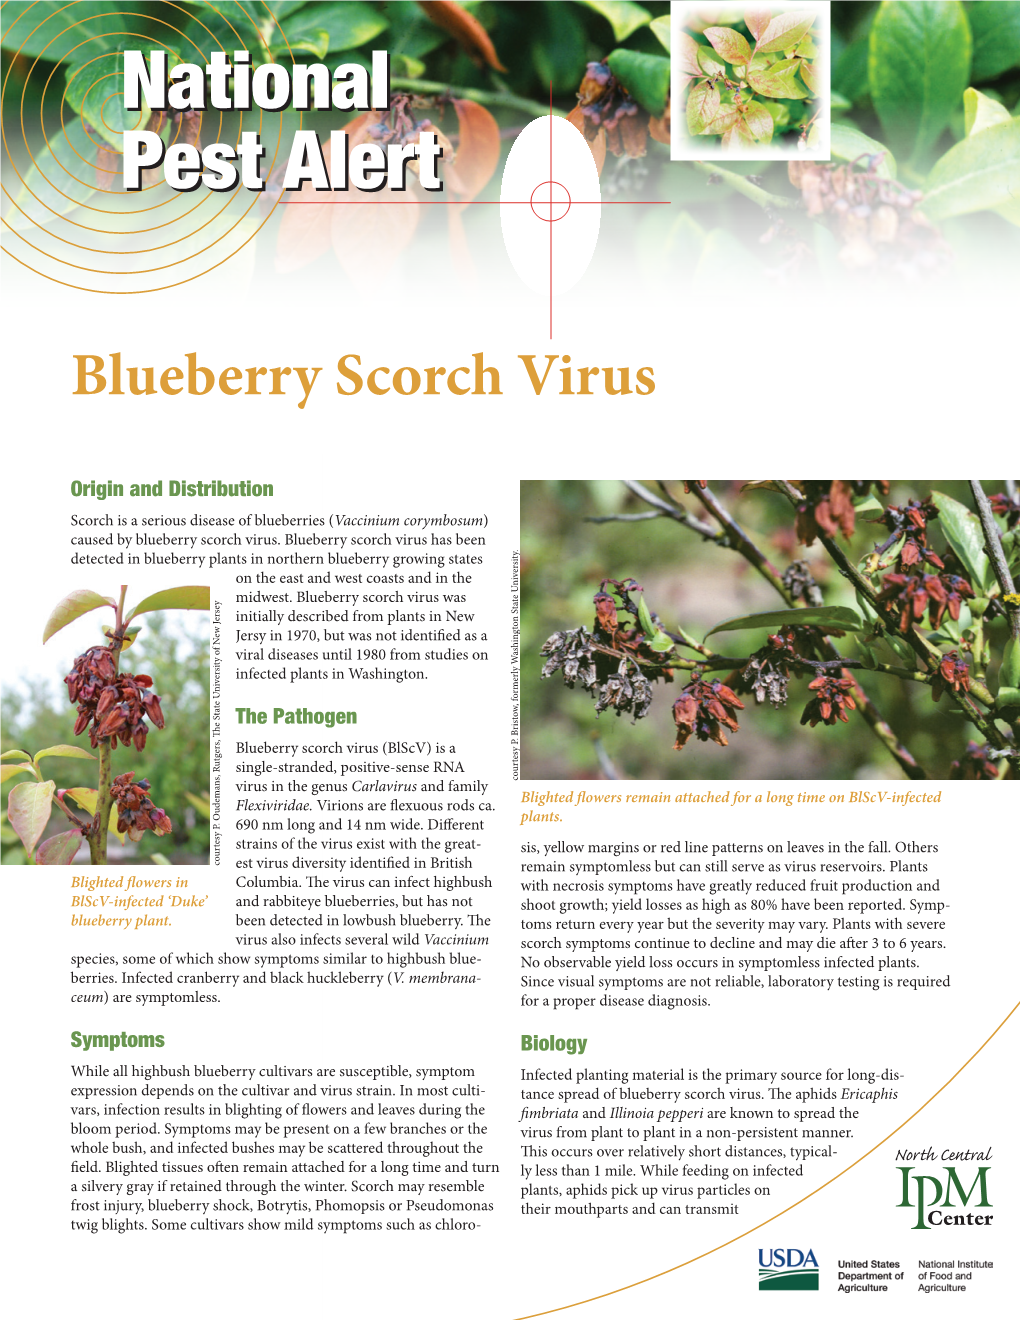 Blueberry Scorch Virus